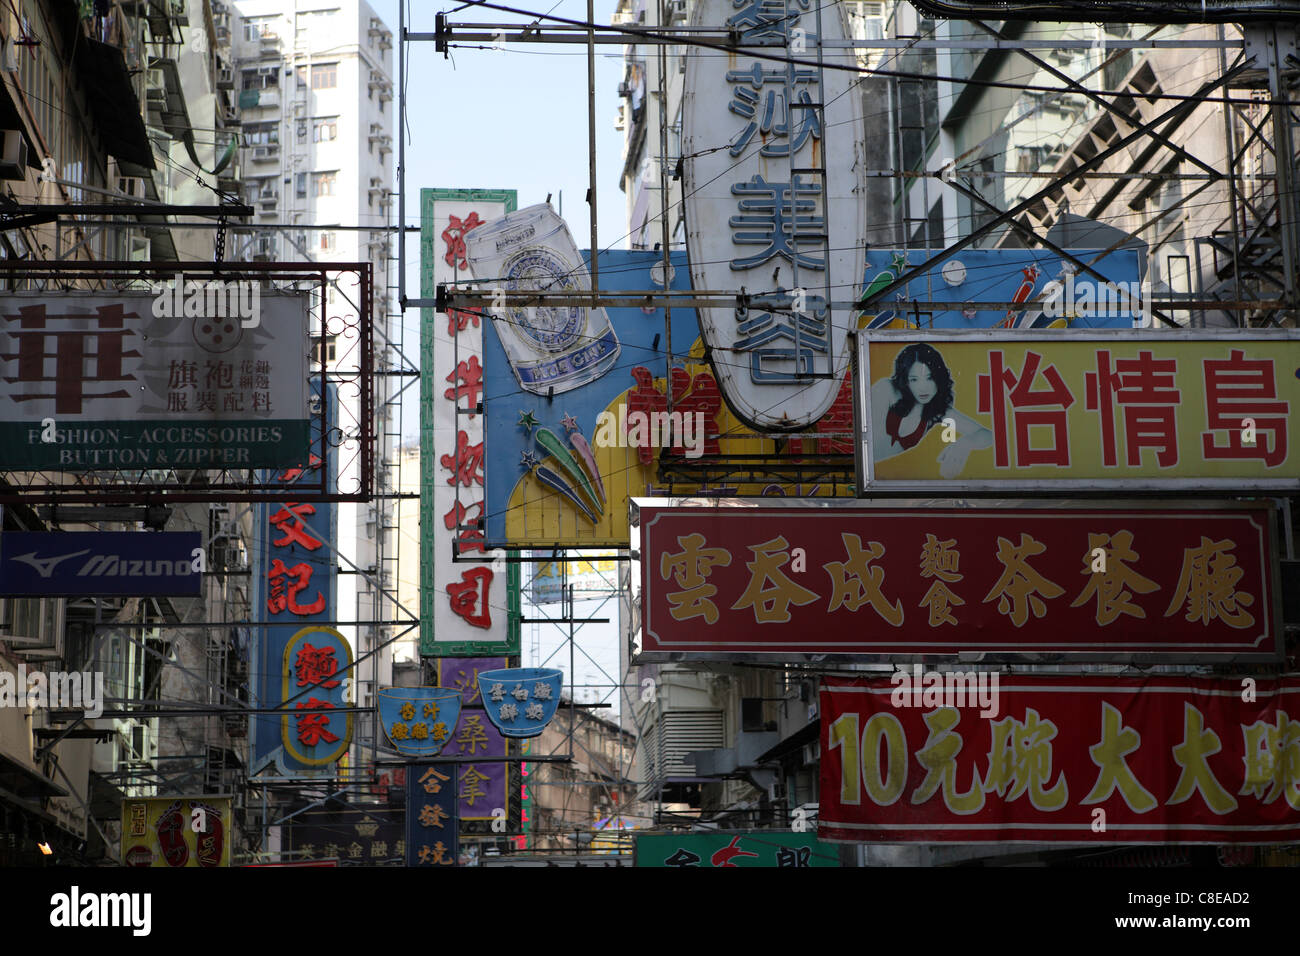 Différents signes dans l'écriture chinoise, sur la rue commerçante de Kowloon, Hong Kong, Chine, Asie Banque D'Images